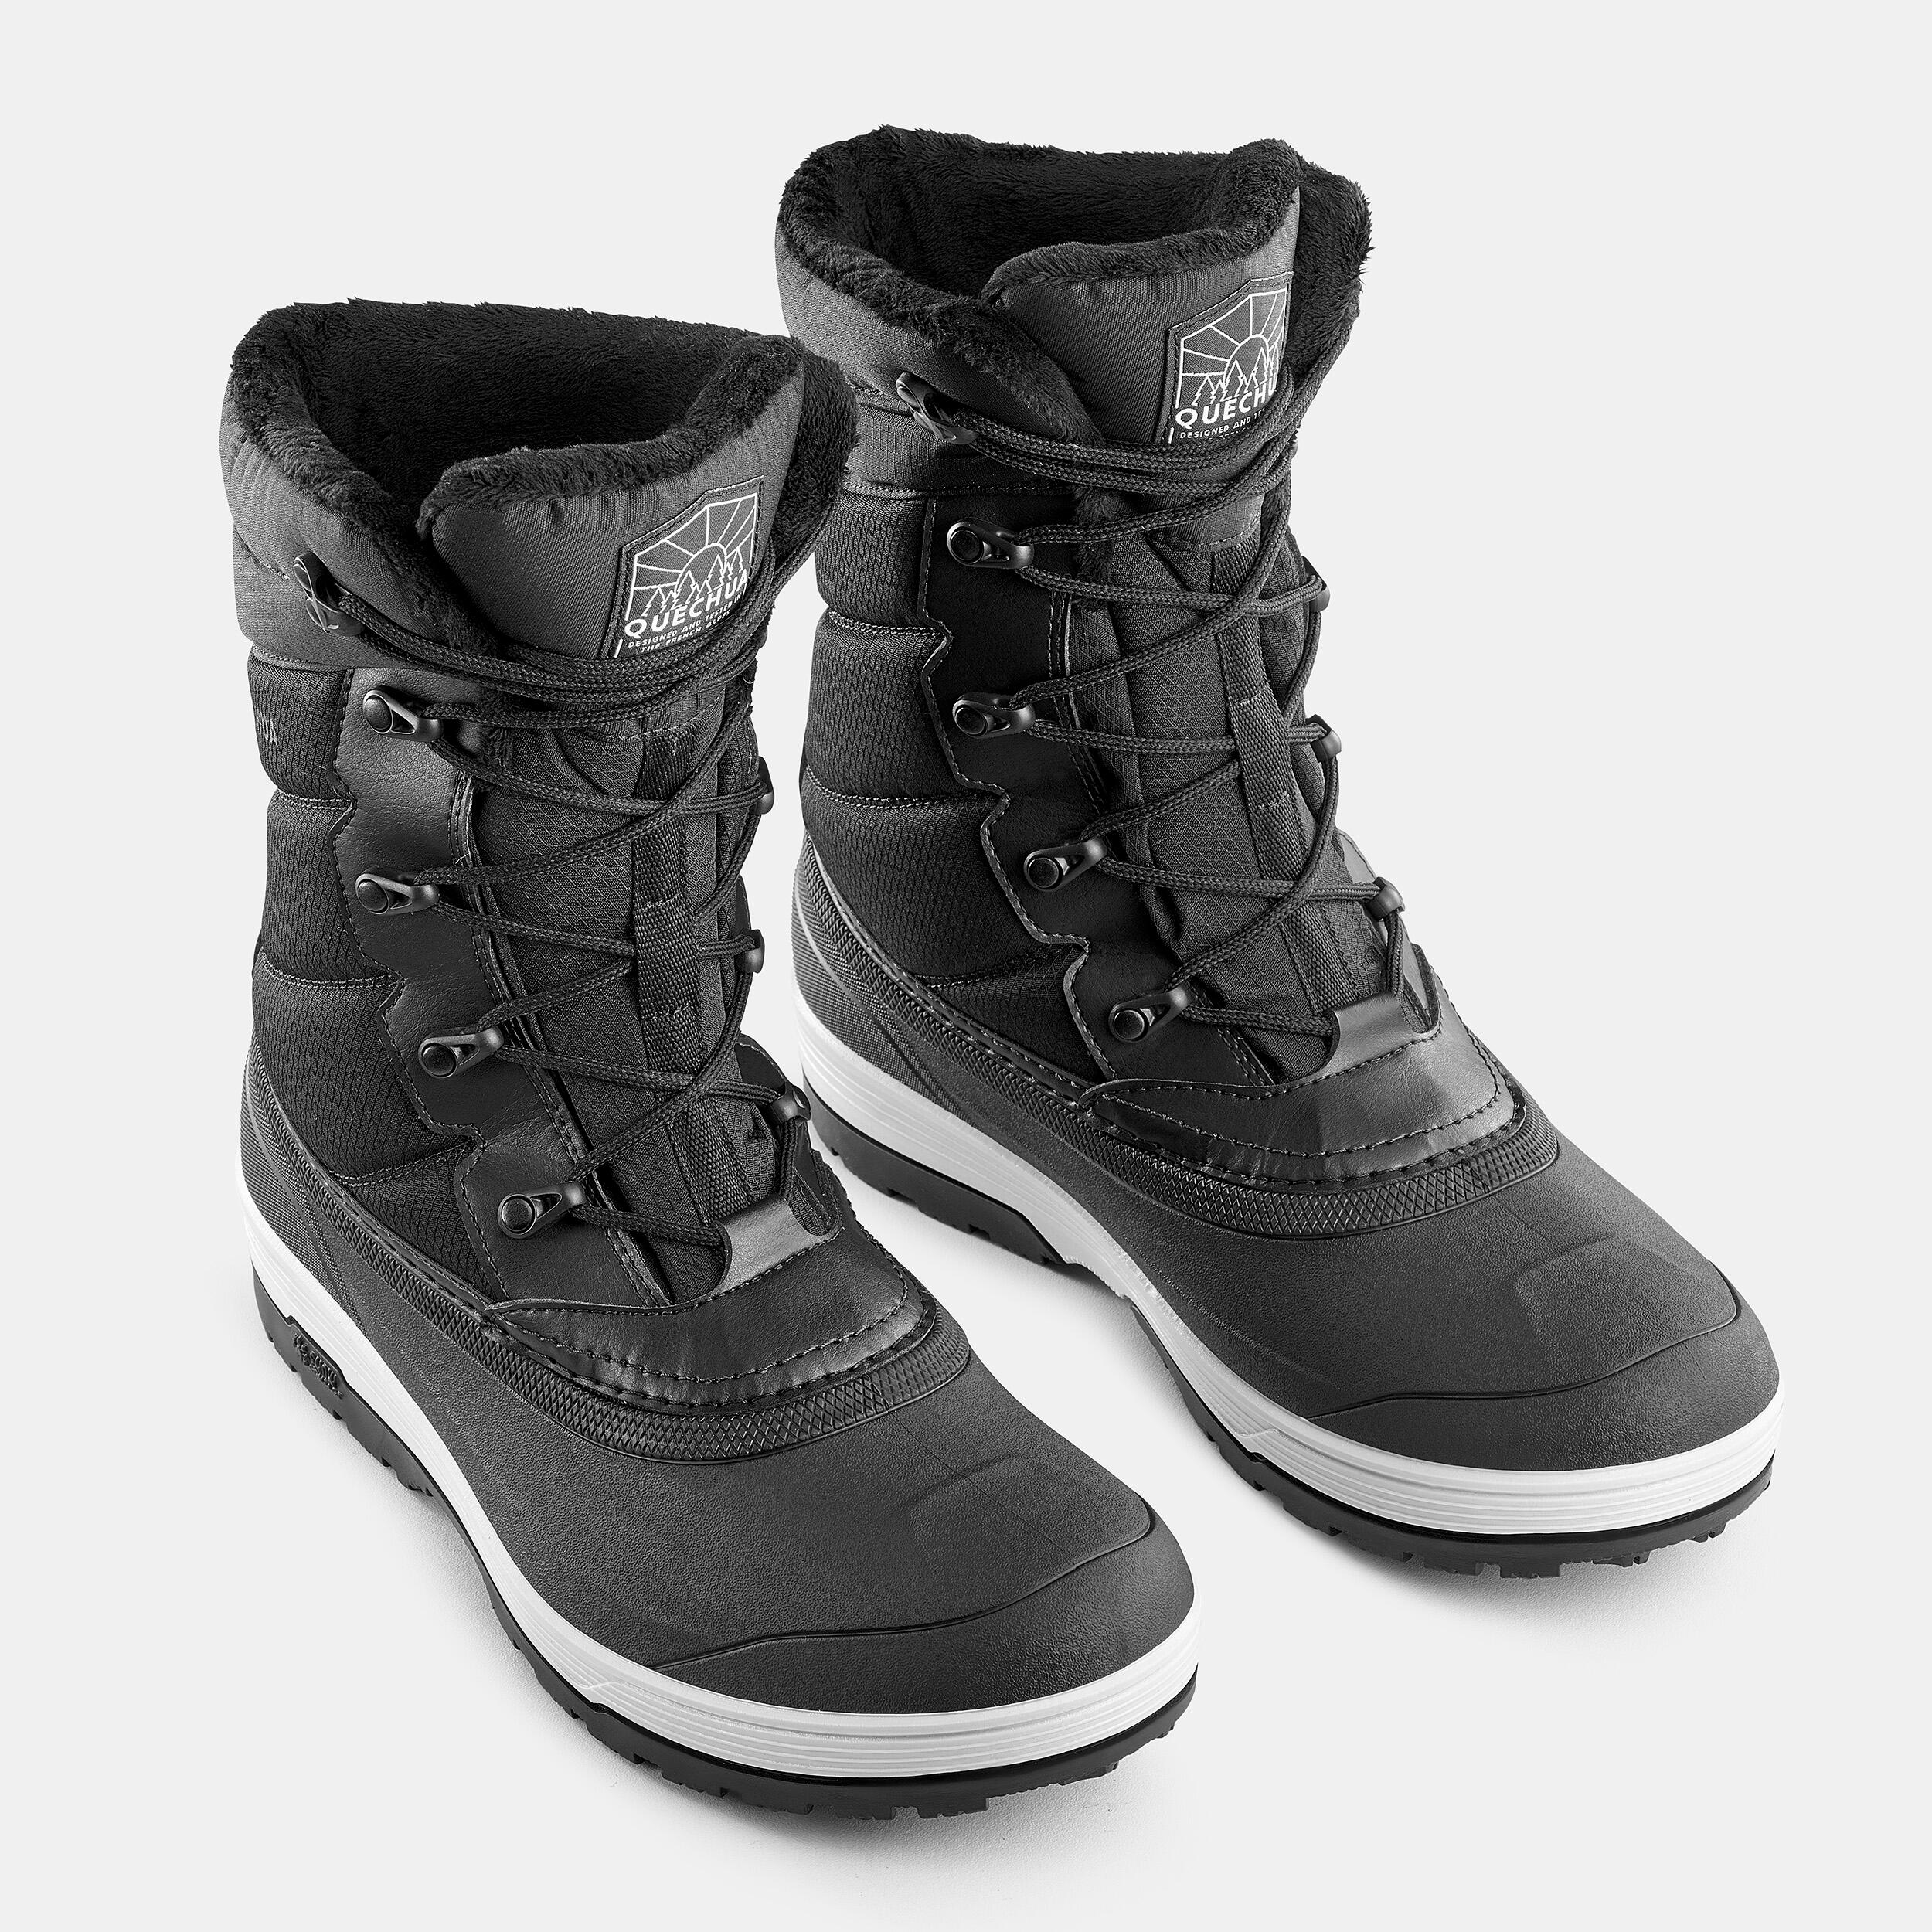 Men’s Winter Boots - SH 500 Black - QUECHUA